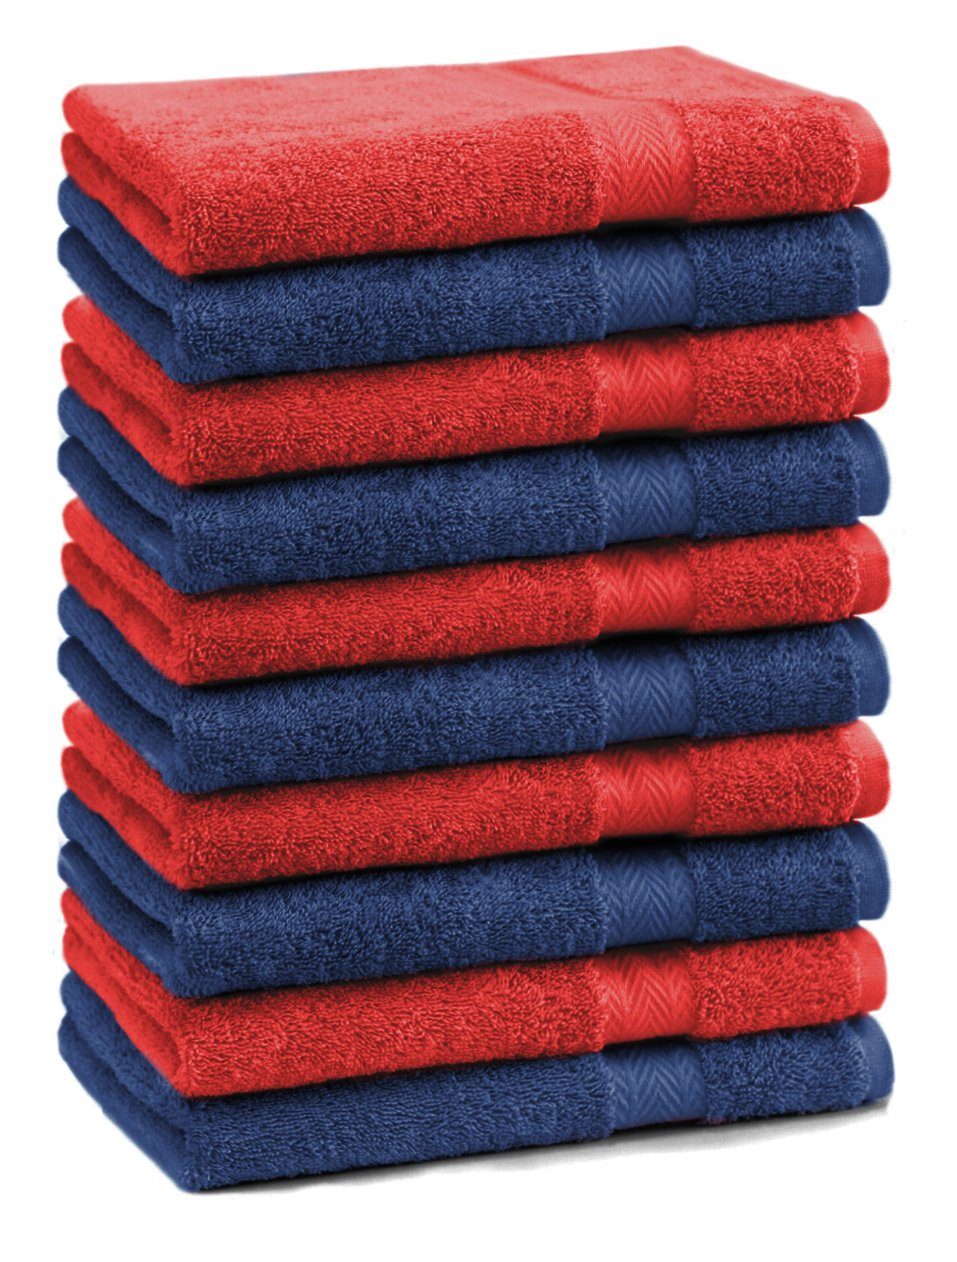 Betz Gästehandtücher 10 Stück Gästehandtücher Premium 100% Baumwolle Gästetuch-Set 30x50 cm Farbe dunkelblau und rot, 100% Baumwolle